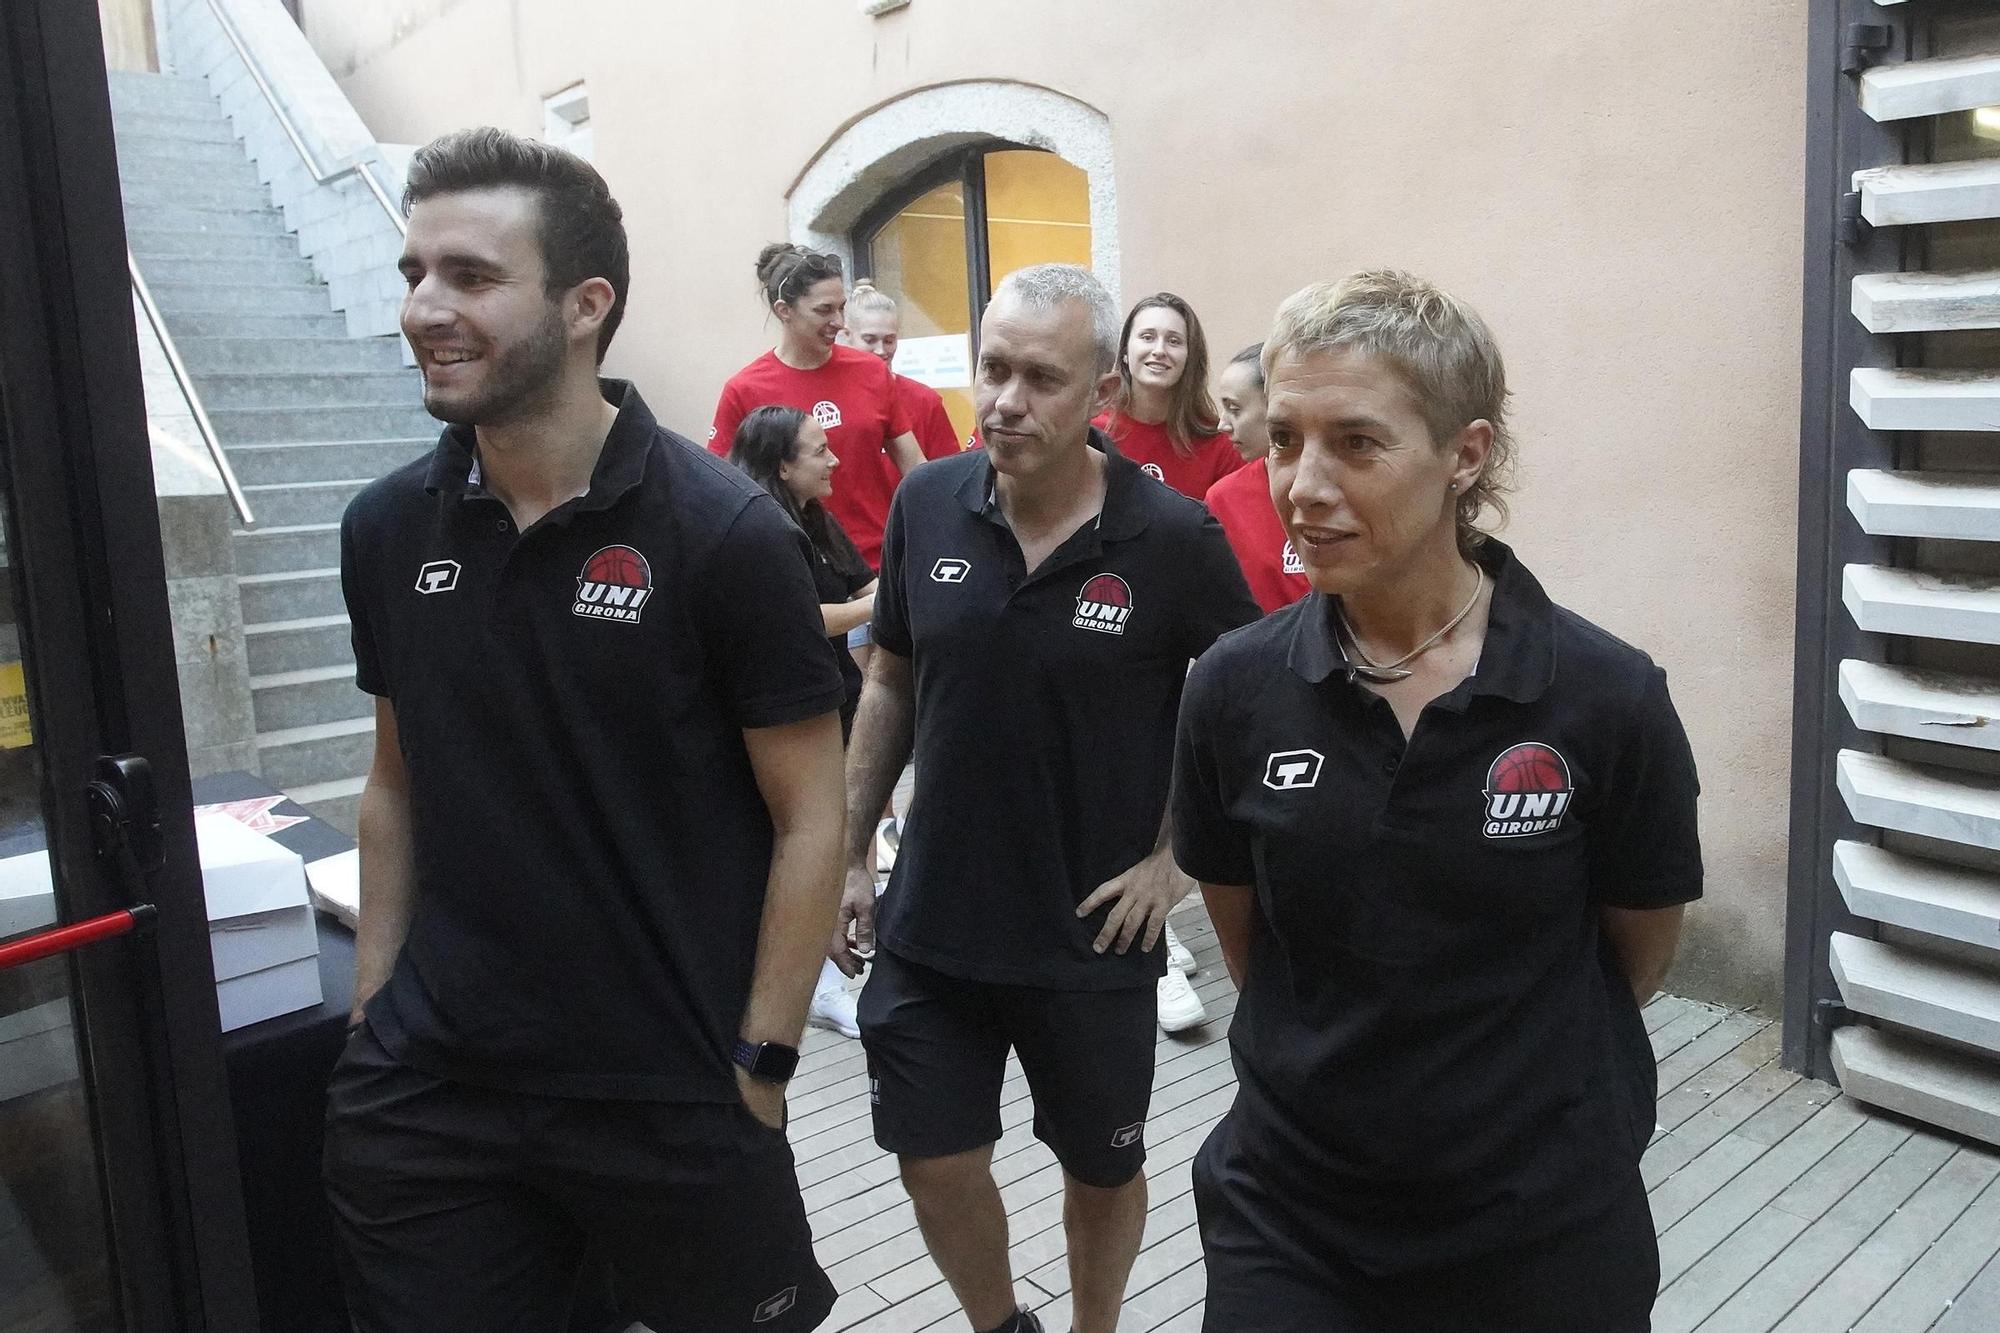 L'Uni Girona presenta equip i nova equipació